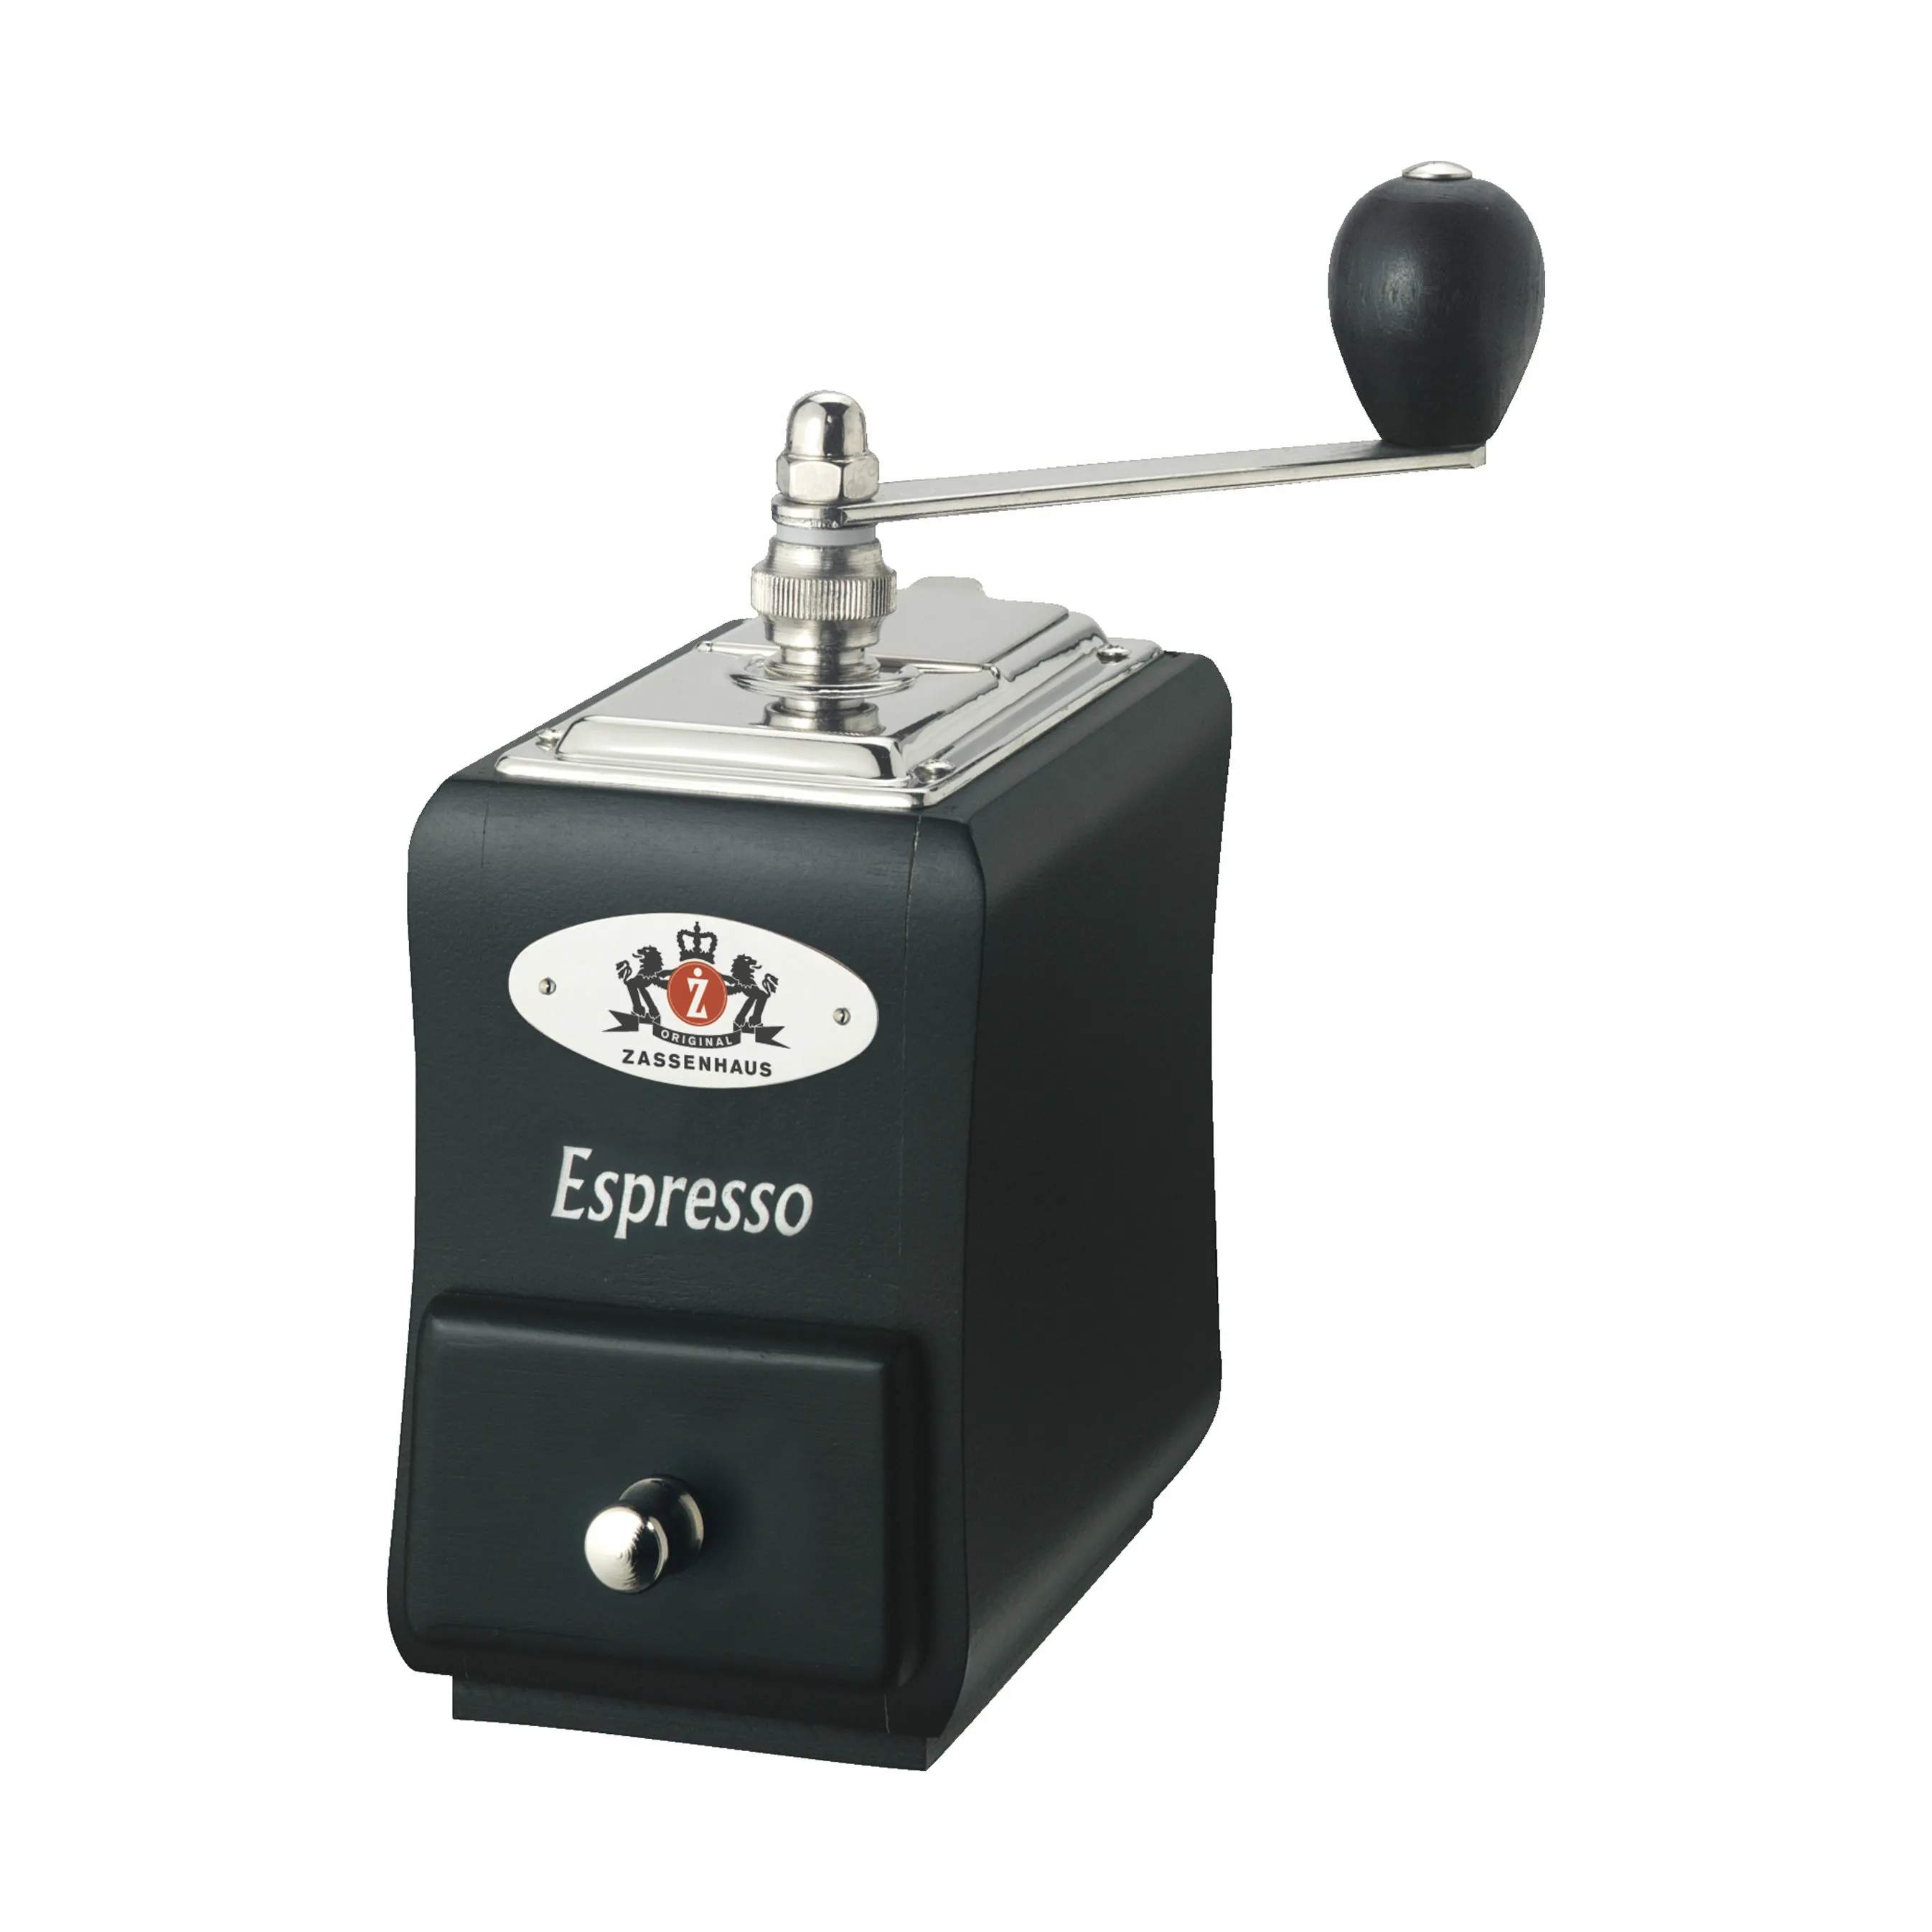 Santiago Espressokværn